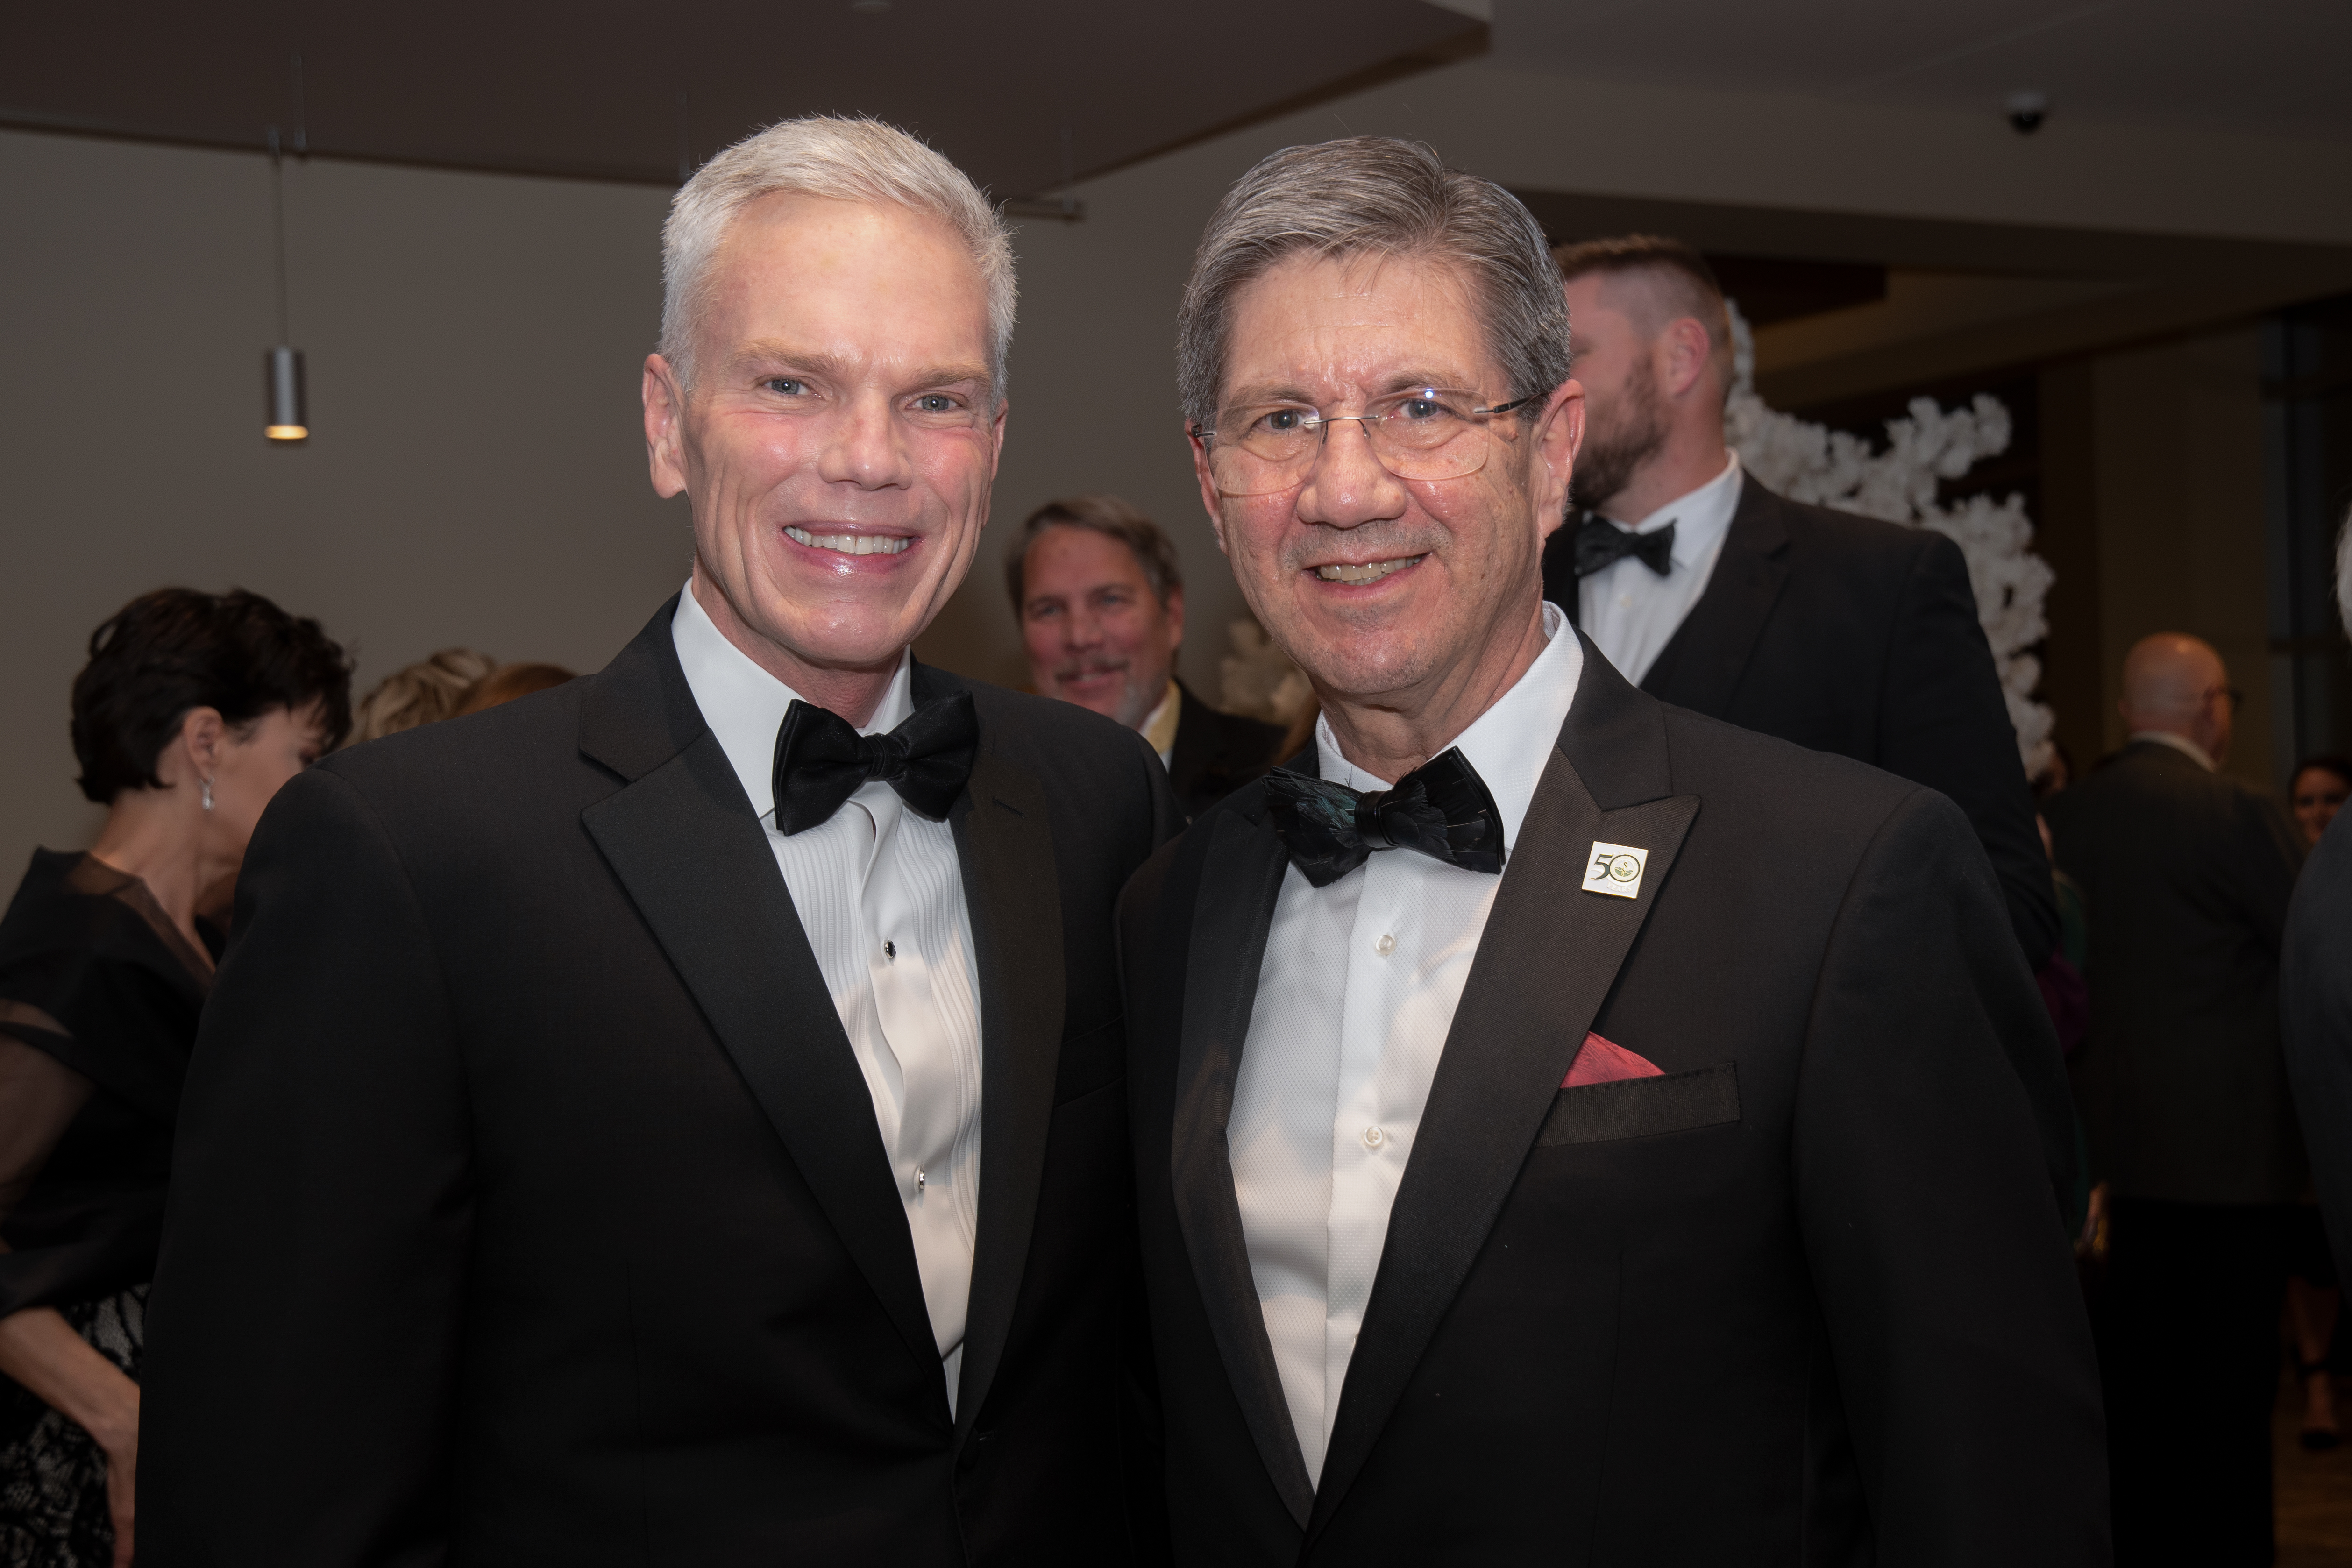 Dr. Nemitz and President Smith at WVSOM's Golden Jubilee